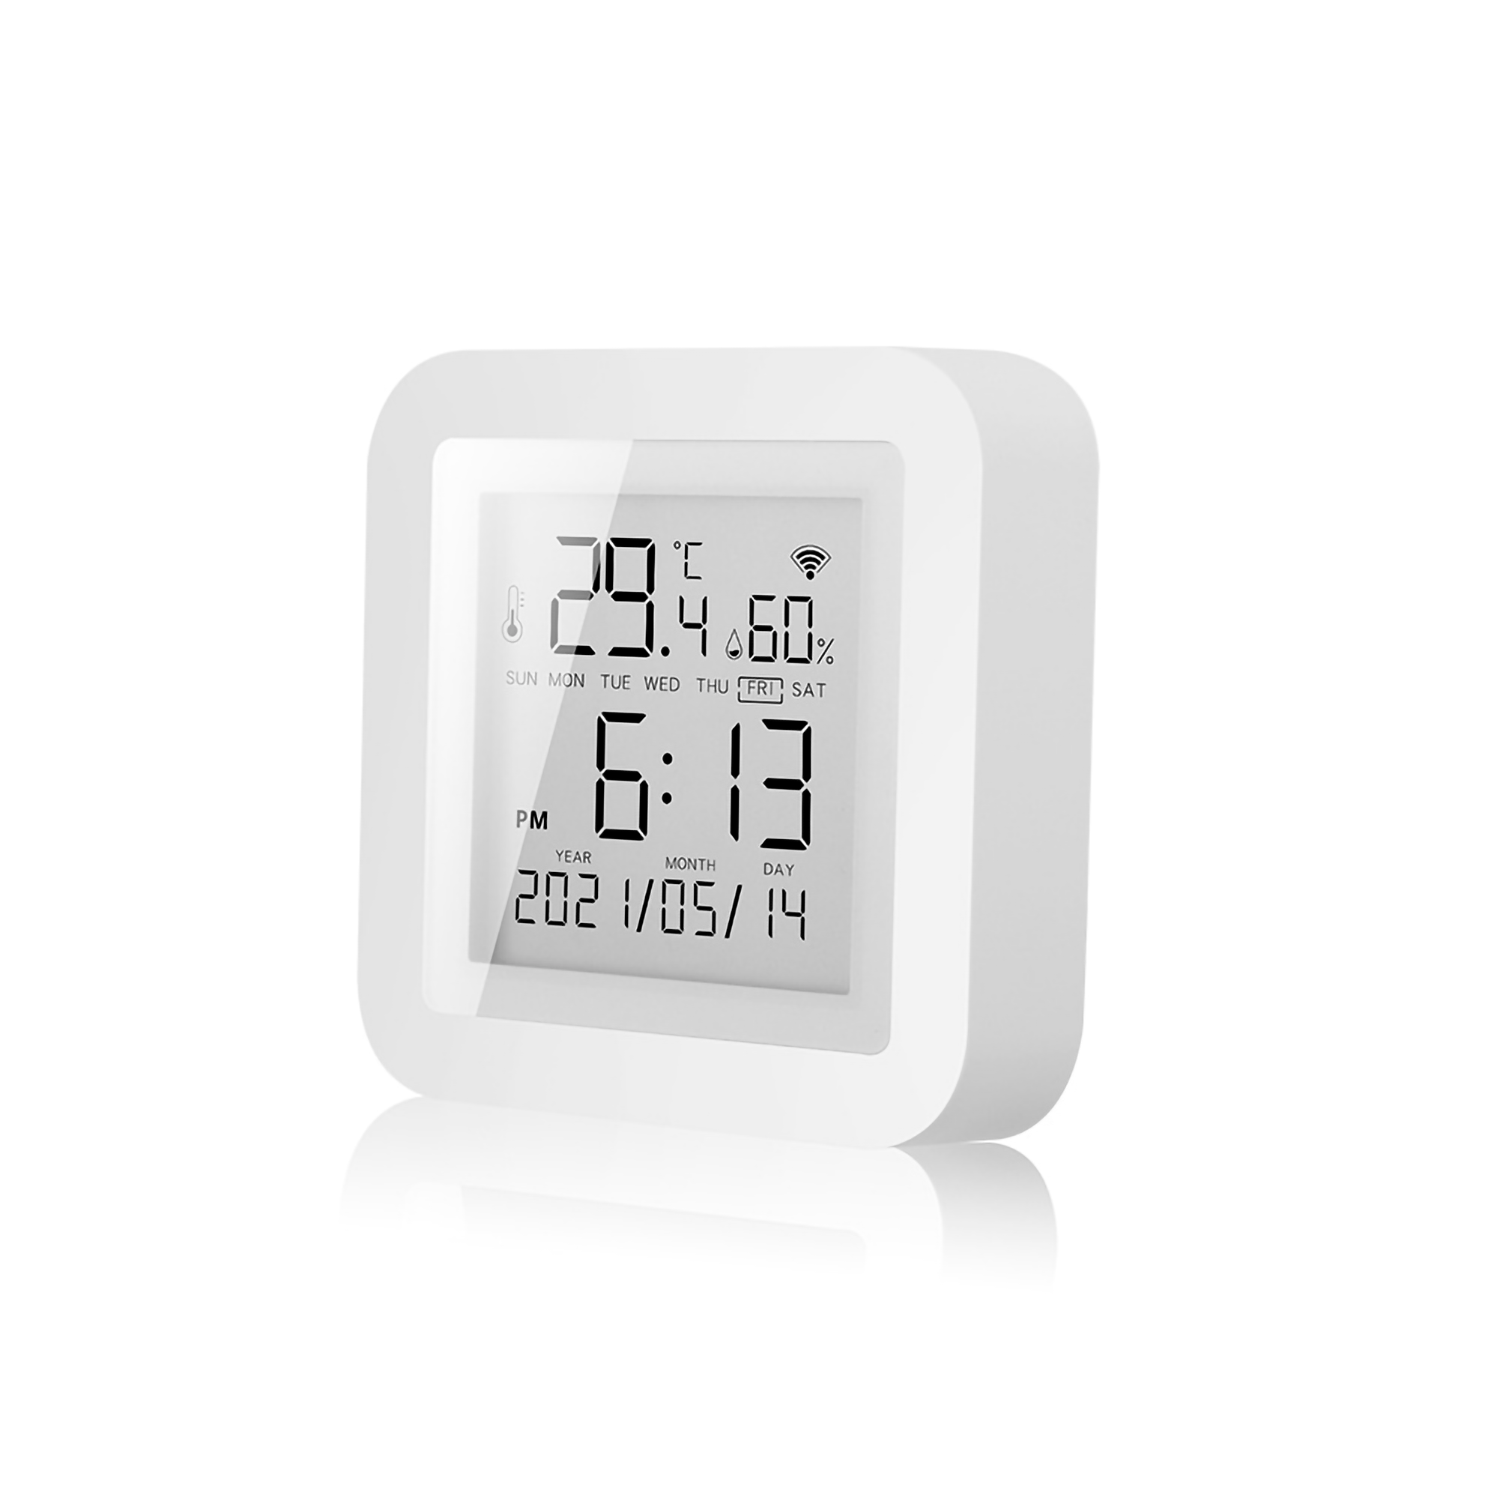 Датчик температуры и влажности Tuya Wi-Fi TY-197 SmarSecur для умного дома